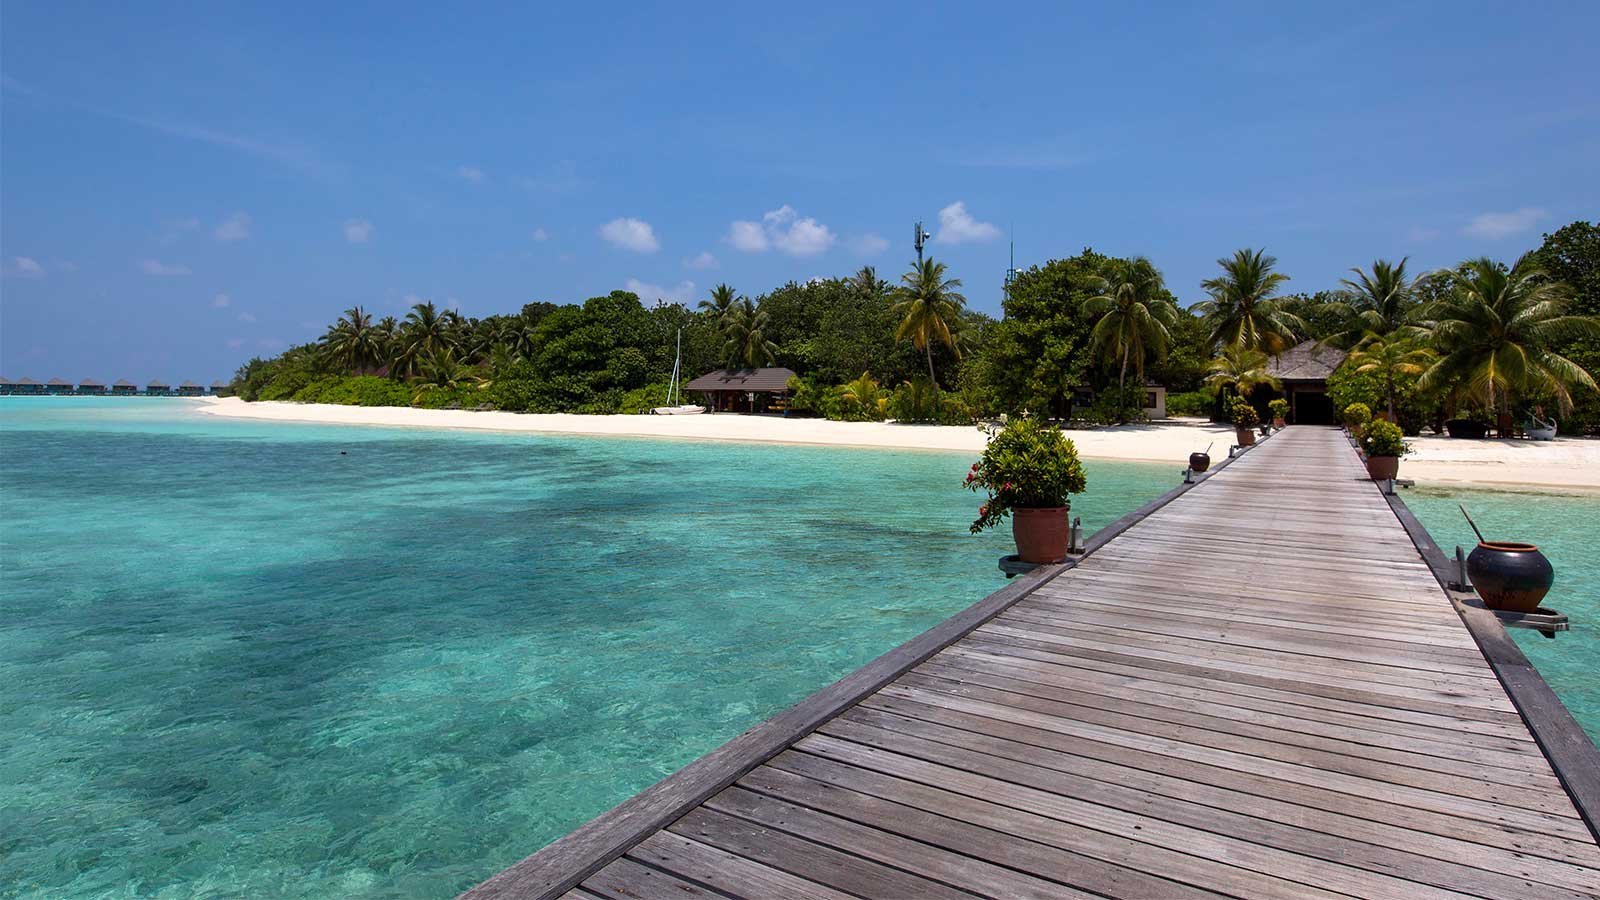 Мальдивы в августе. Остров Канухура Мальдивы. Лаккадивское море Мальдивы. Фихалхохи Мальдивы. Курамати Мальдивы.